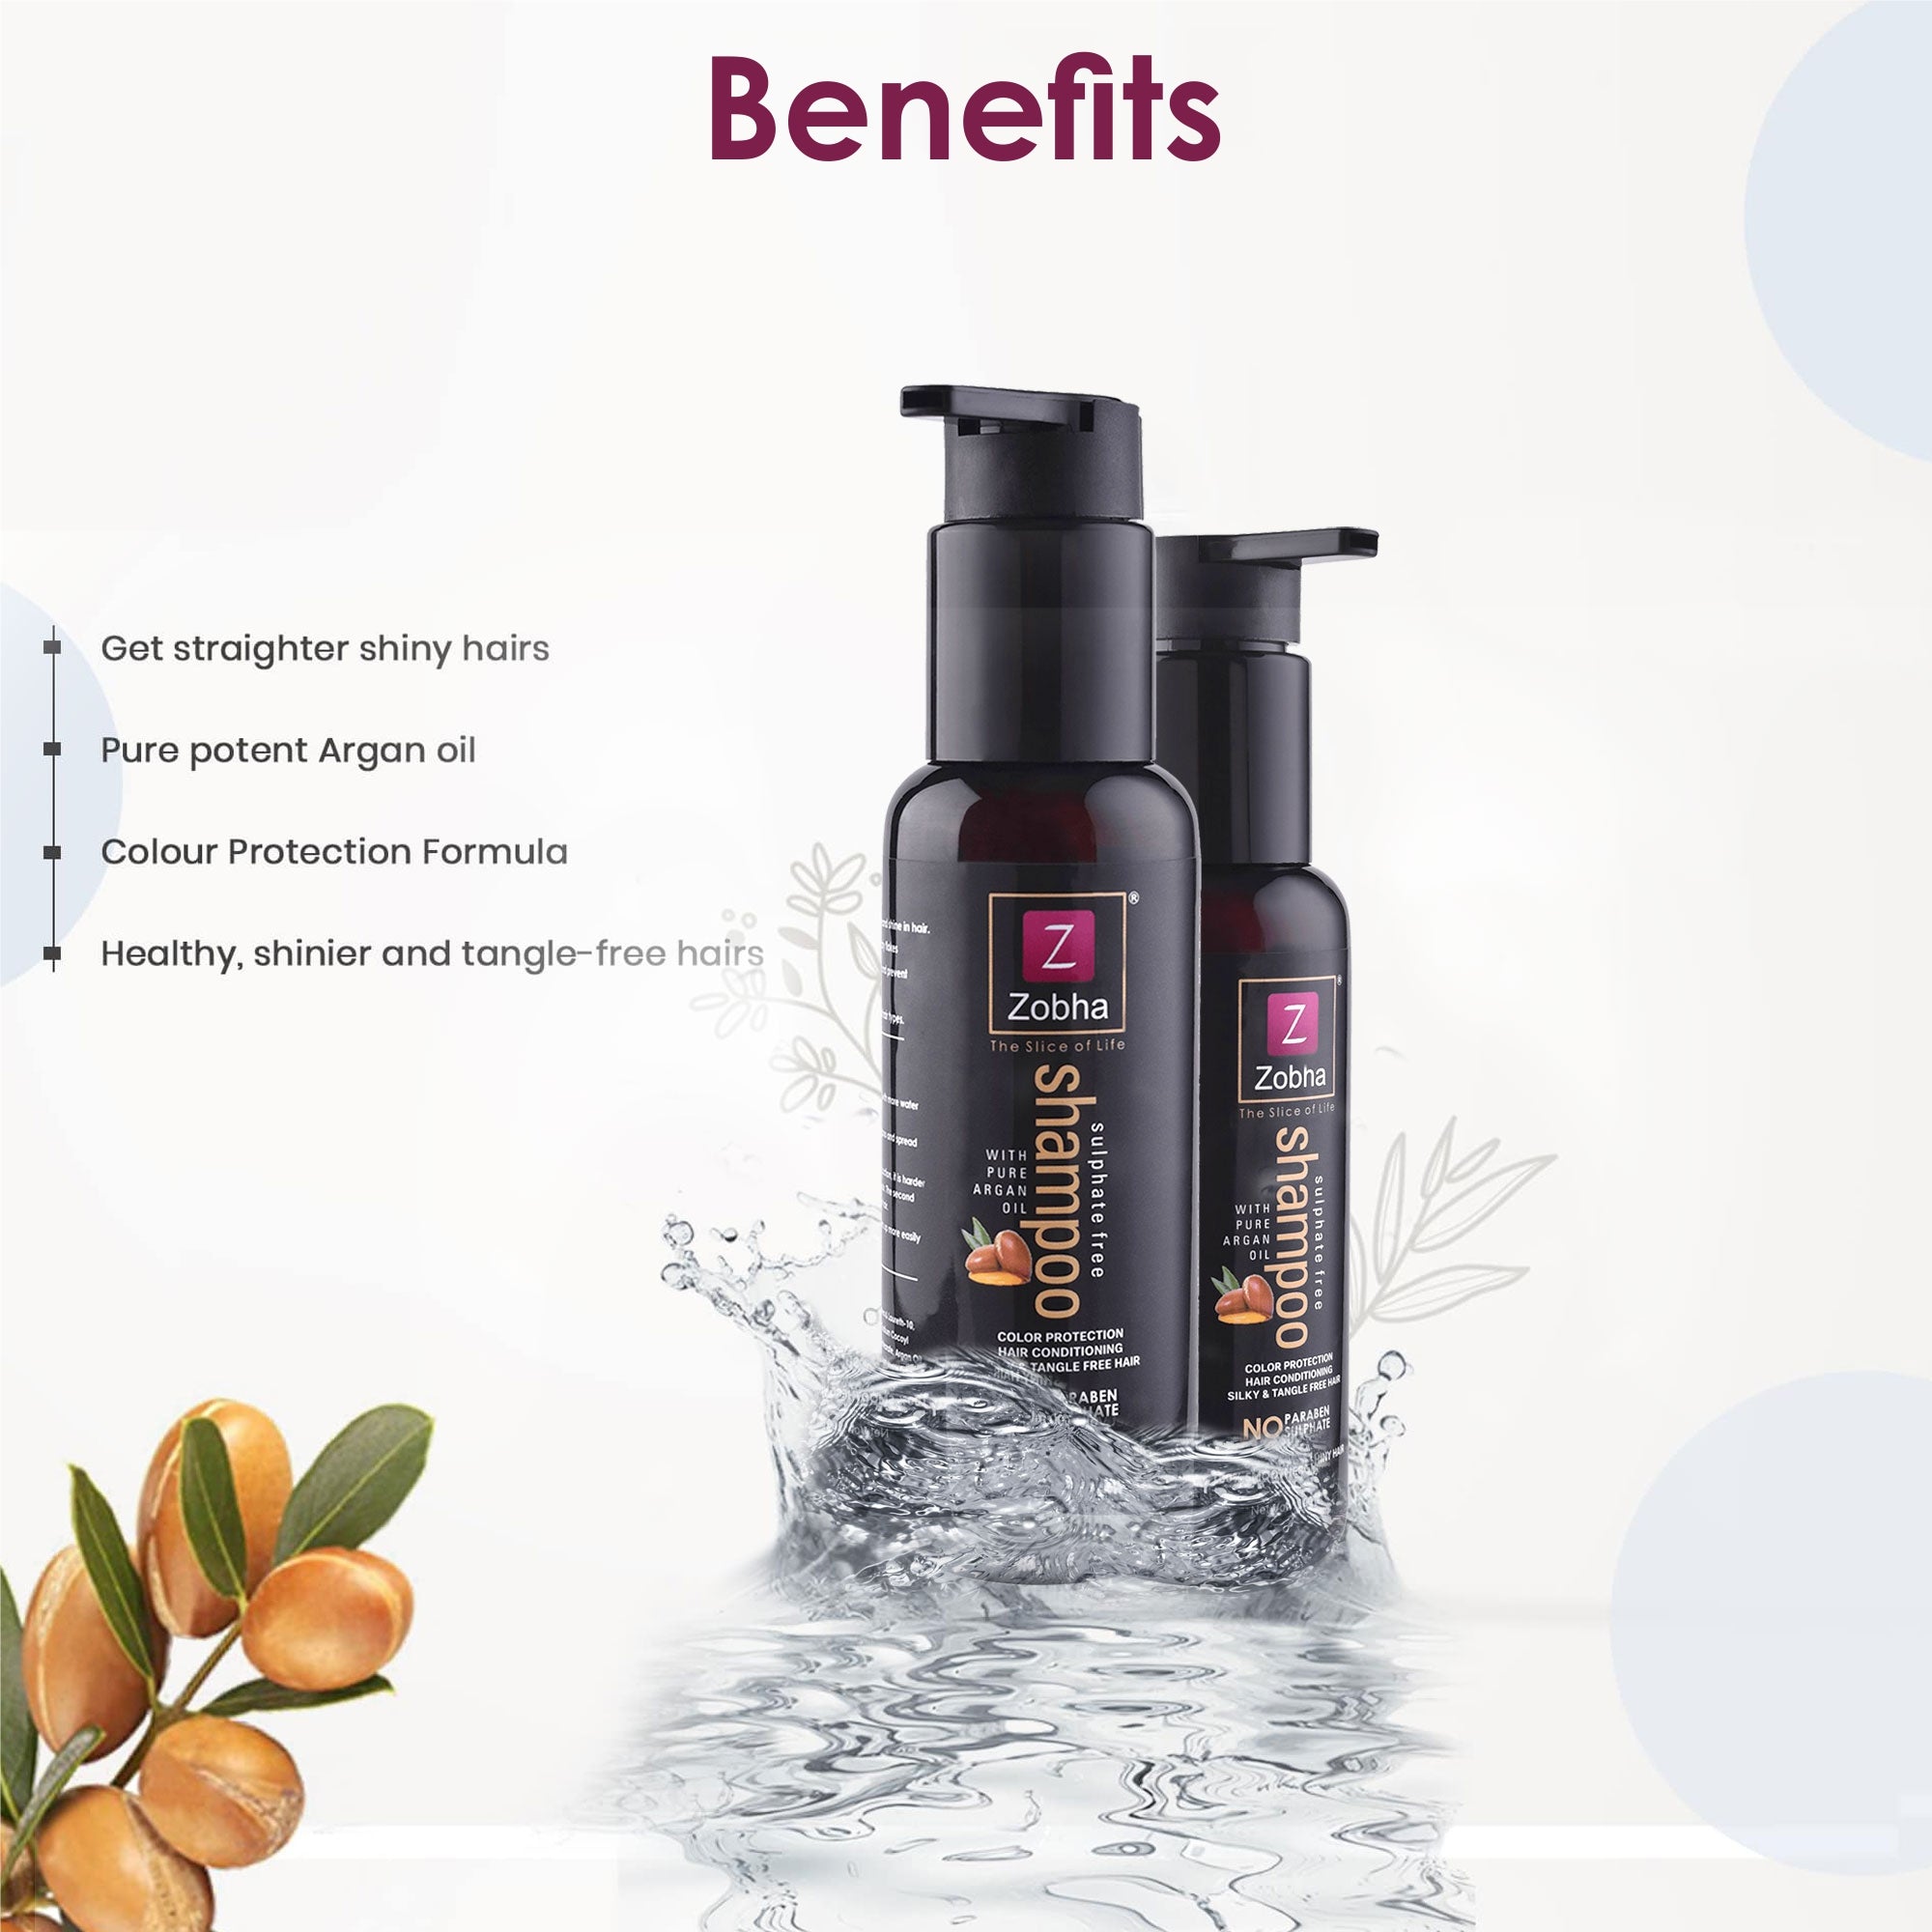 Benefits of Zobha Sulphate Free Shampoo